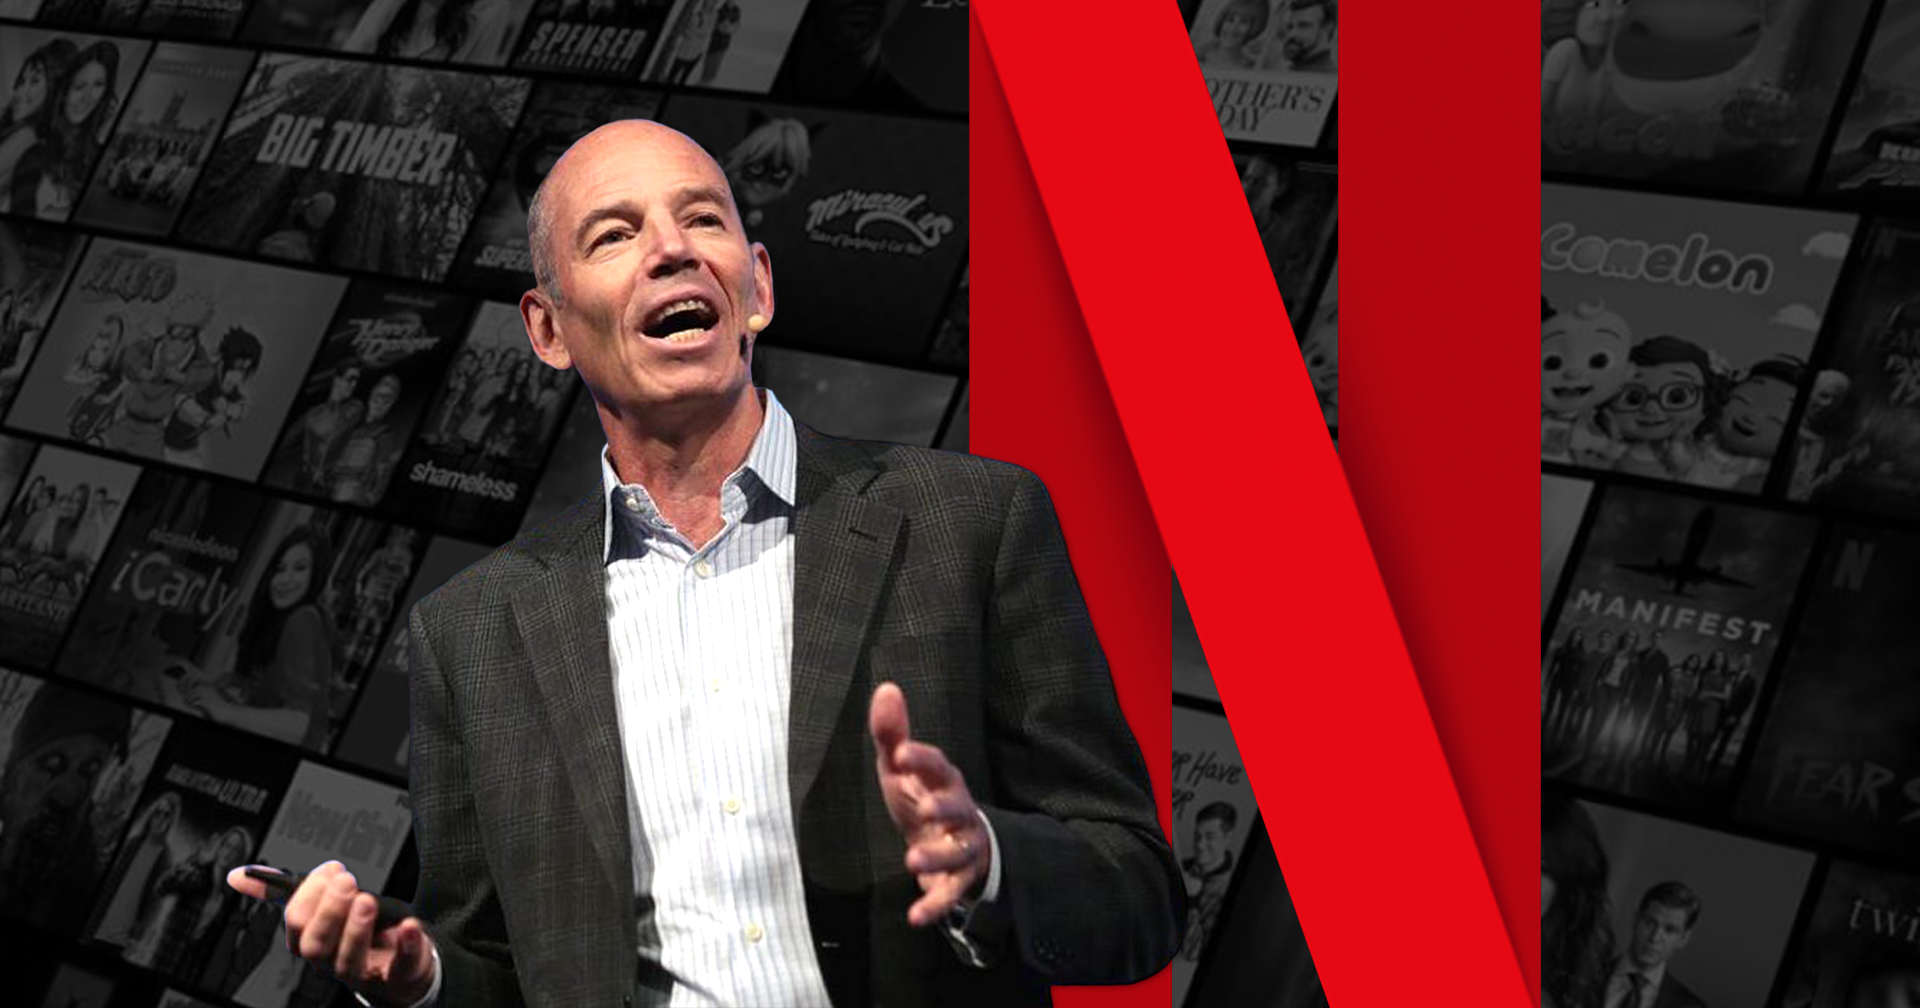 Mark Randolph ผู้ร่วมก่อตั้งและซีอีโอคนแรกของ Netflix บอกว่าการ ‘เดินตามความฝัน’ เป็น ‘คำแนะนำที่ไม่ดีนัก’